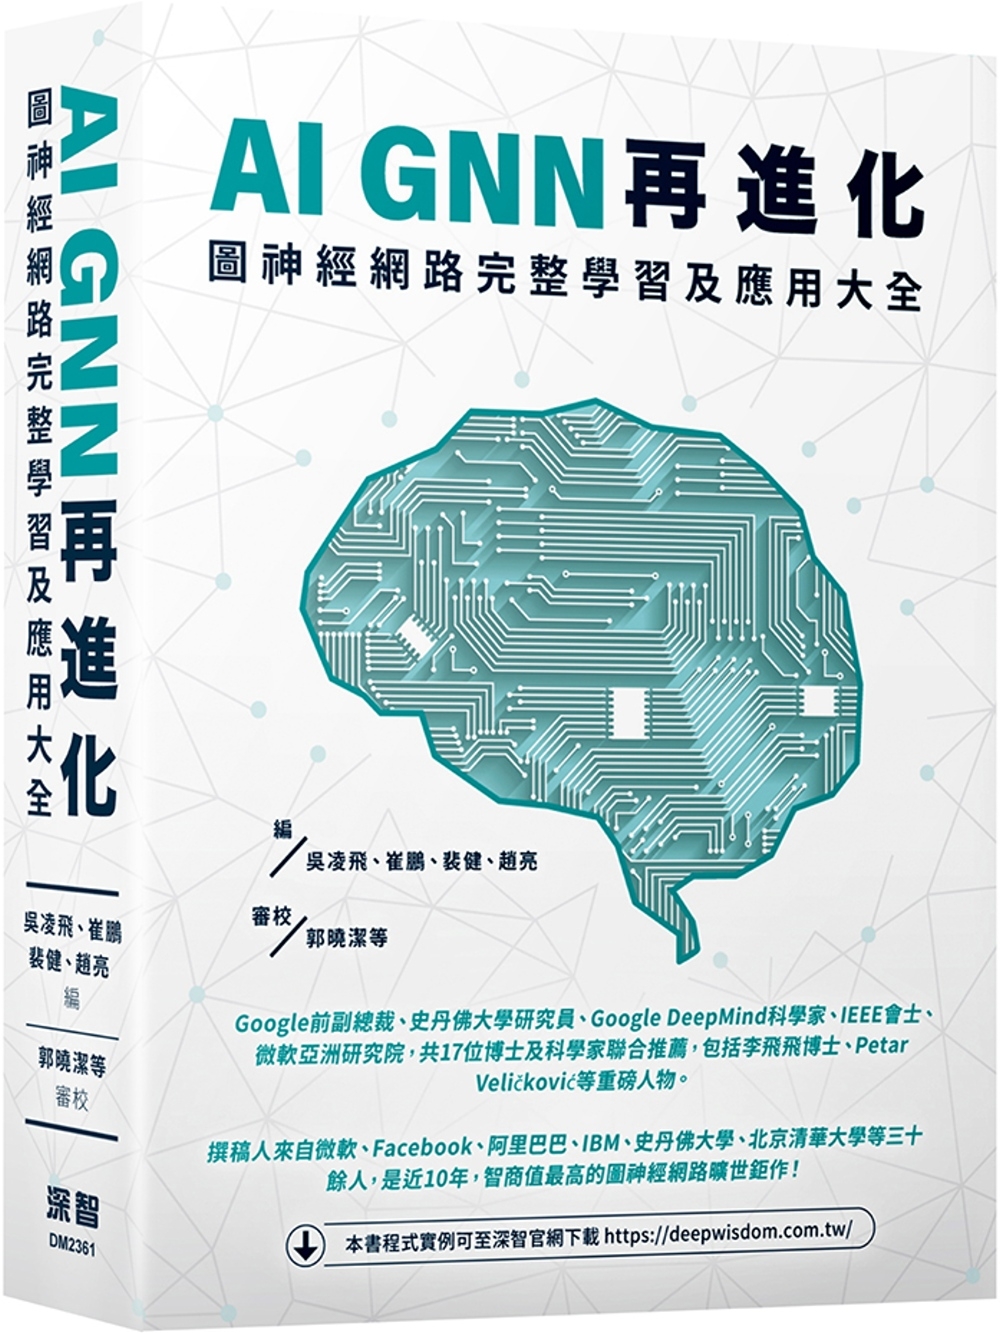 AI GNN再進化-圖神經網路完整學習及應用大全